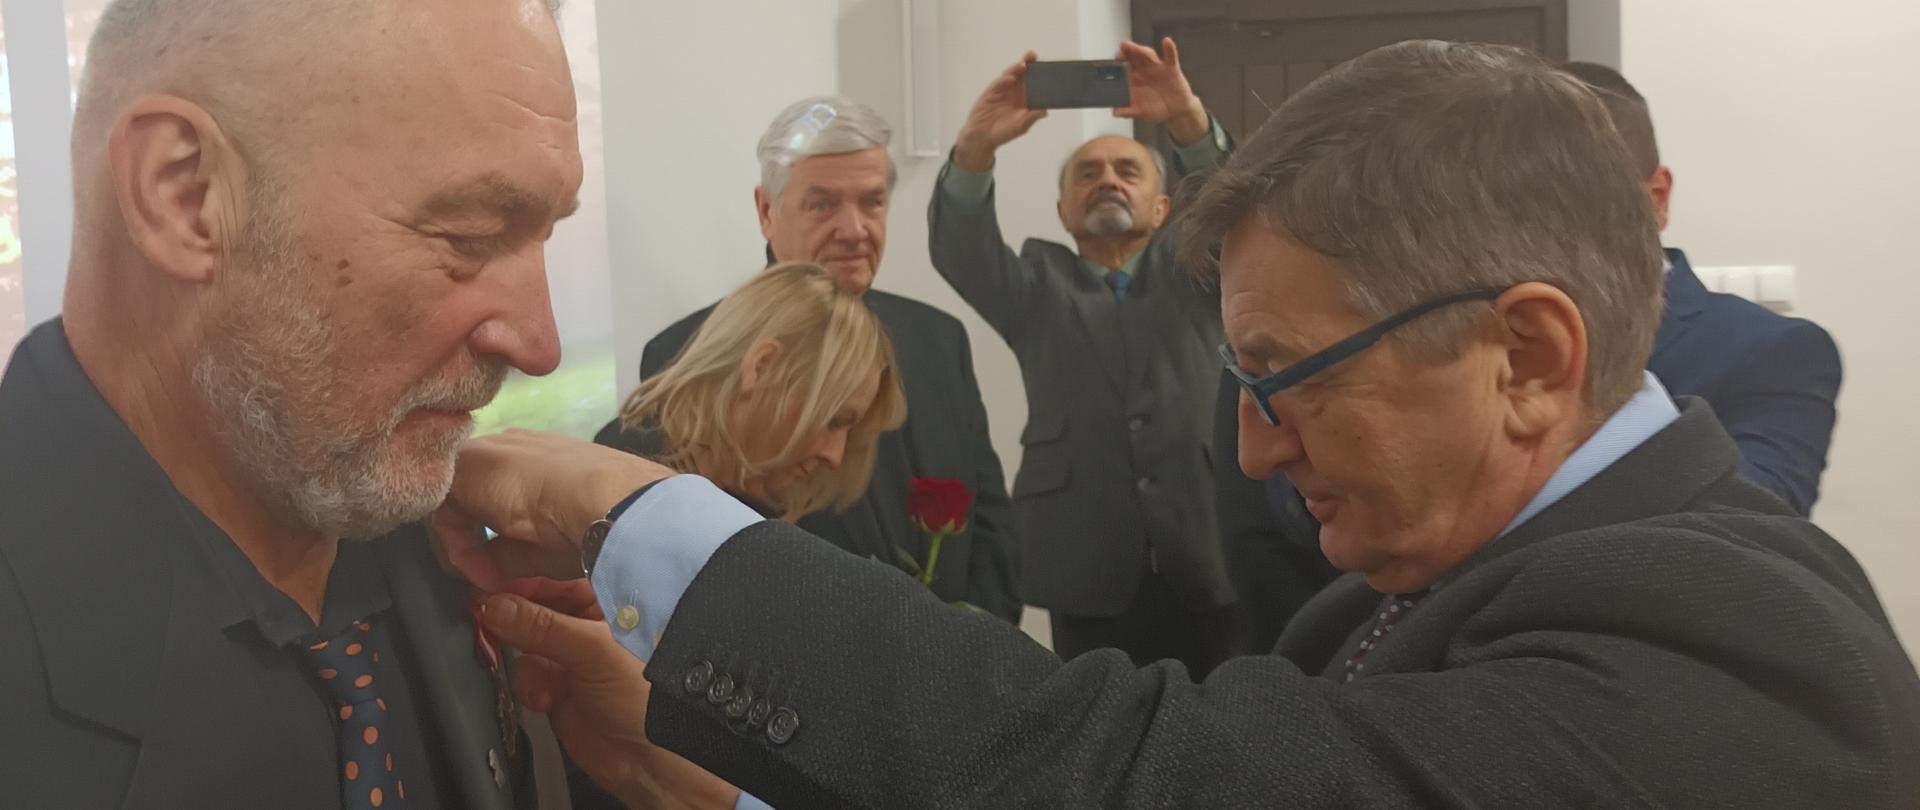 Na zdjęciu po lewej stronie widzimy Piotra Biesa odbierającego z rąk Marszałka Sejmu Marka Kuchcińskiego znajdującego się po prawej stronie. 